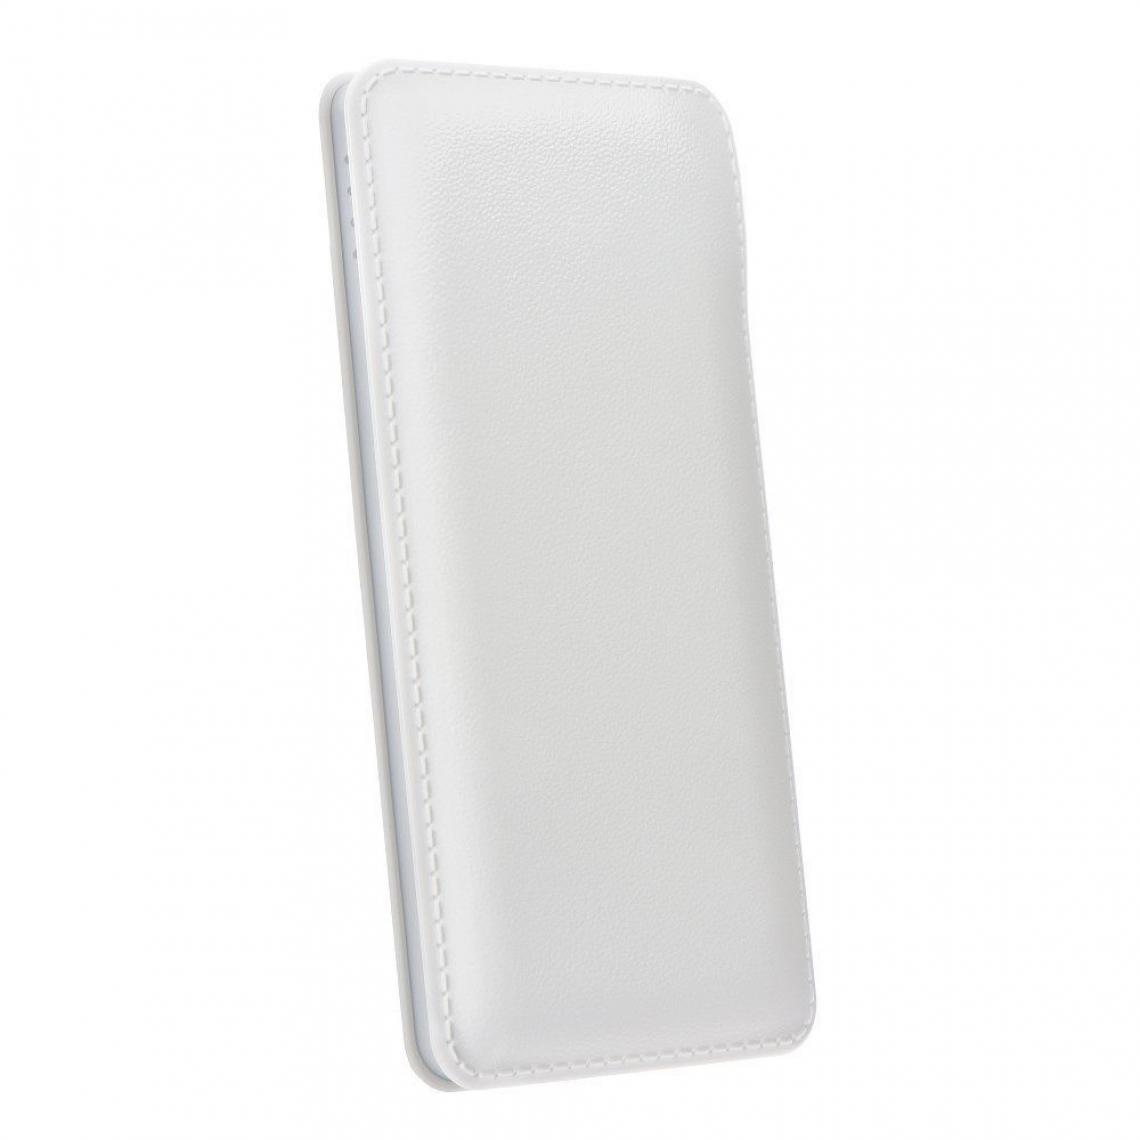 Ozzzo - Chargeur batterie externe 20000 mAh powerbank ozzzo blanc pour Samsung Galaxy Jean2 - Autres accessoires smartphone